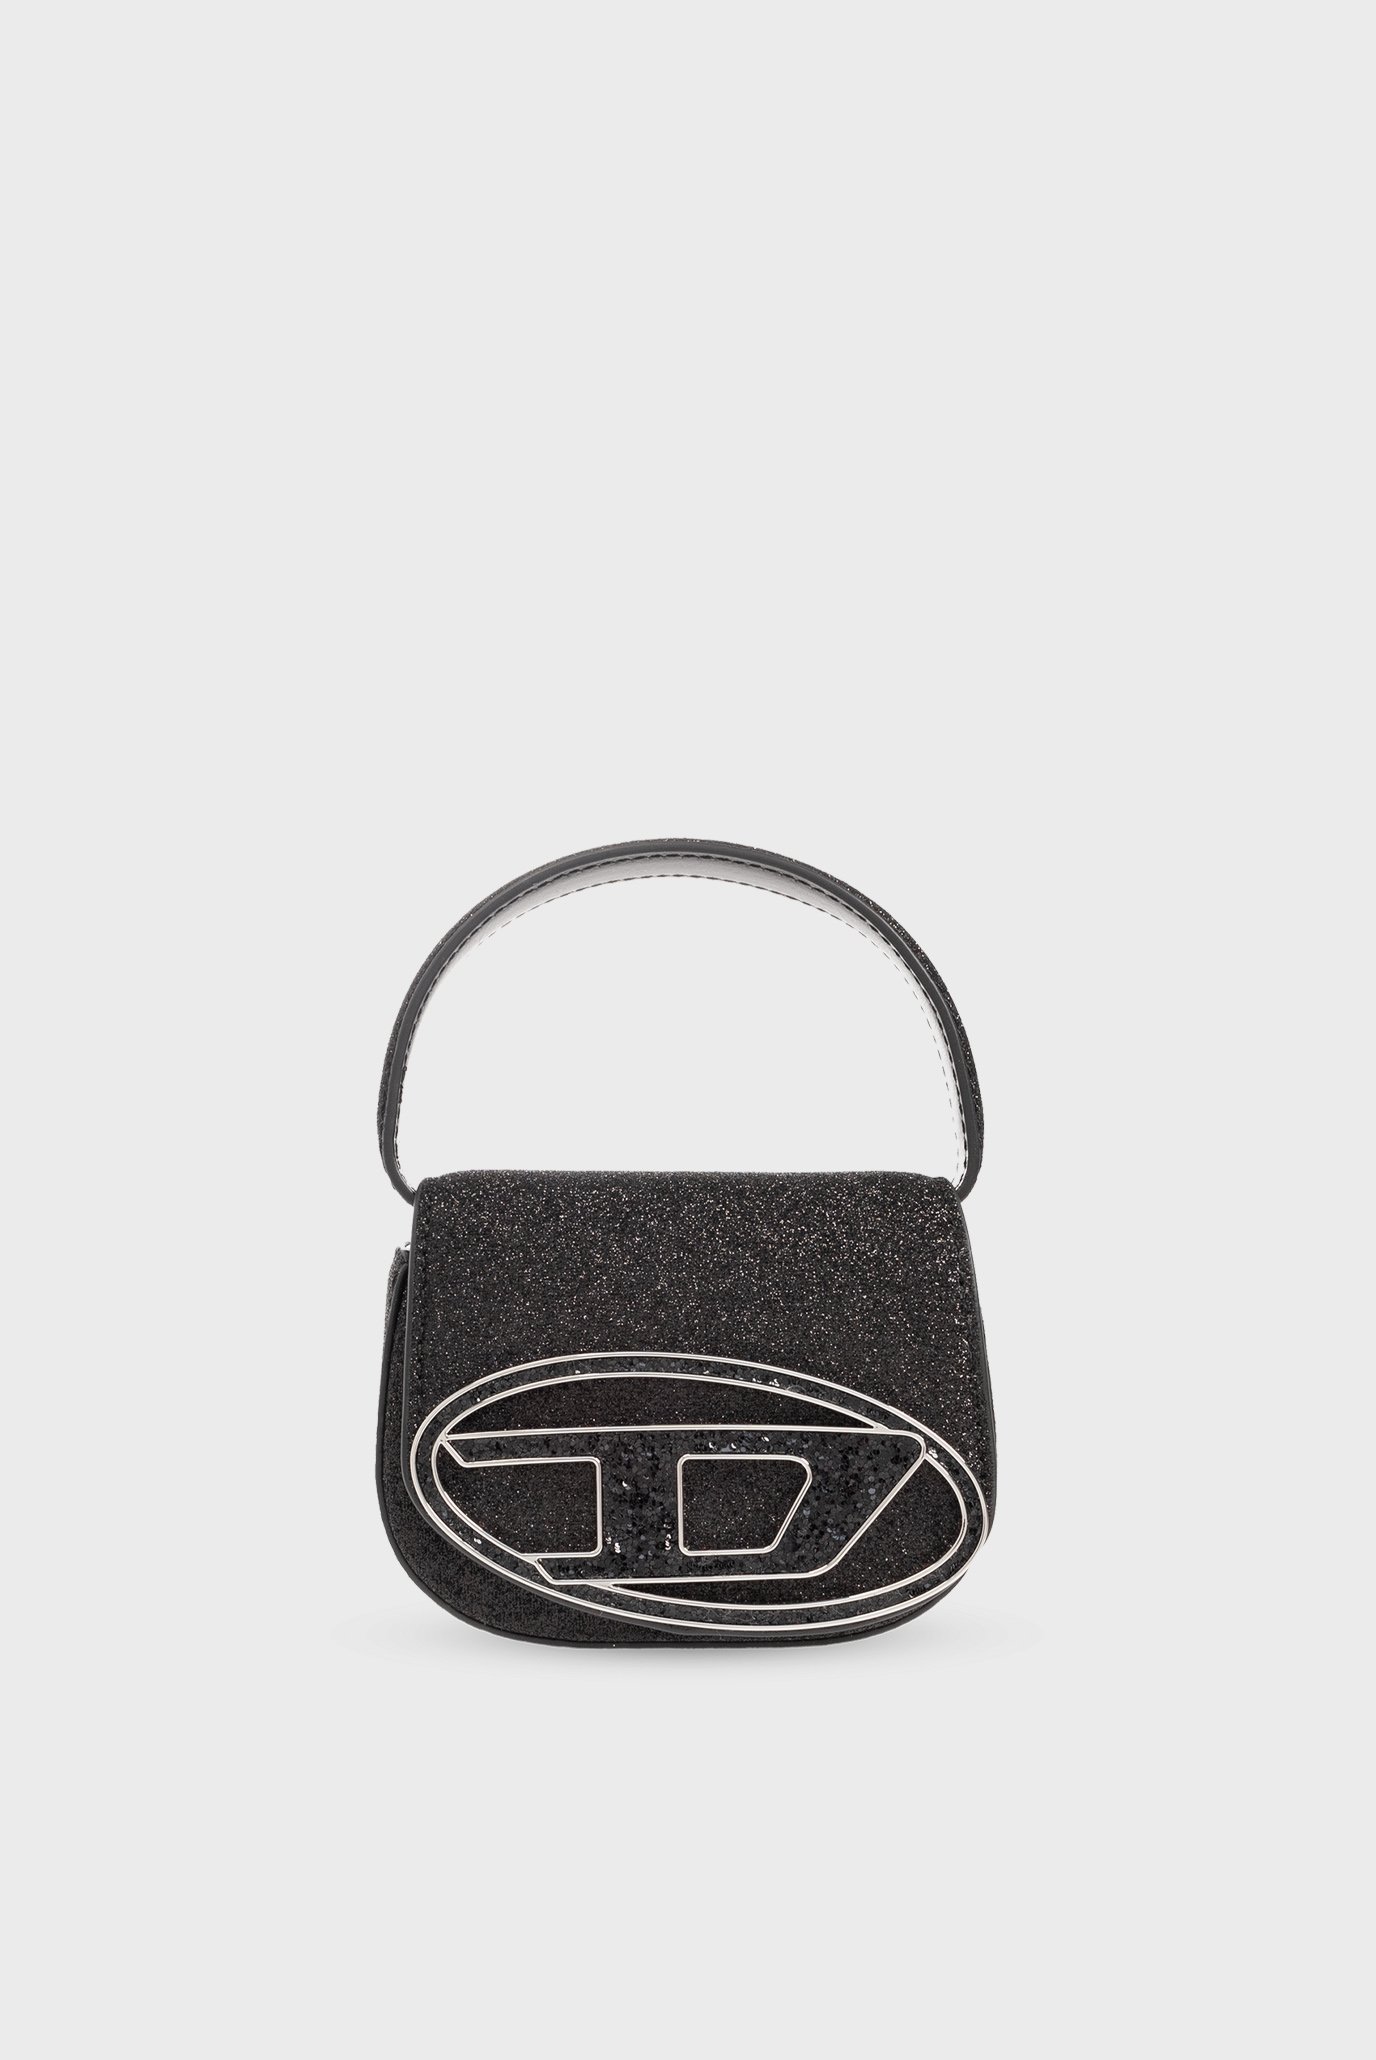 Жіноча чорна сумка 1DR XS 1